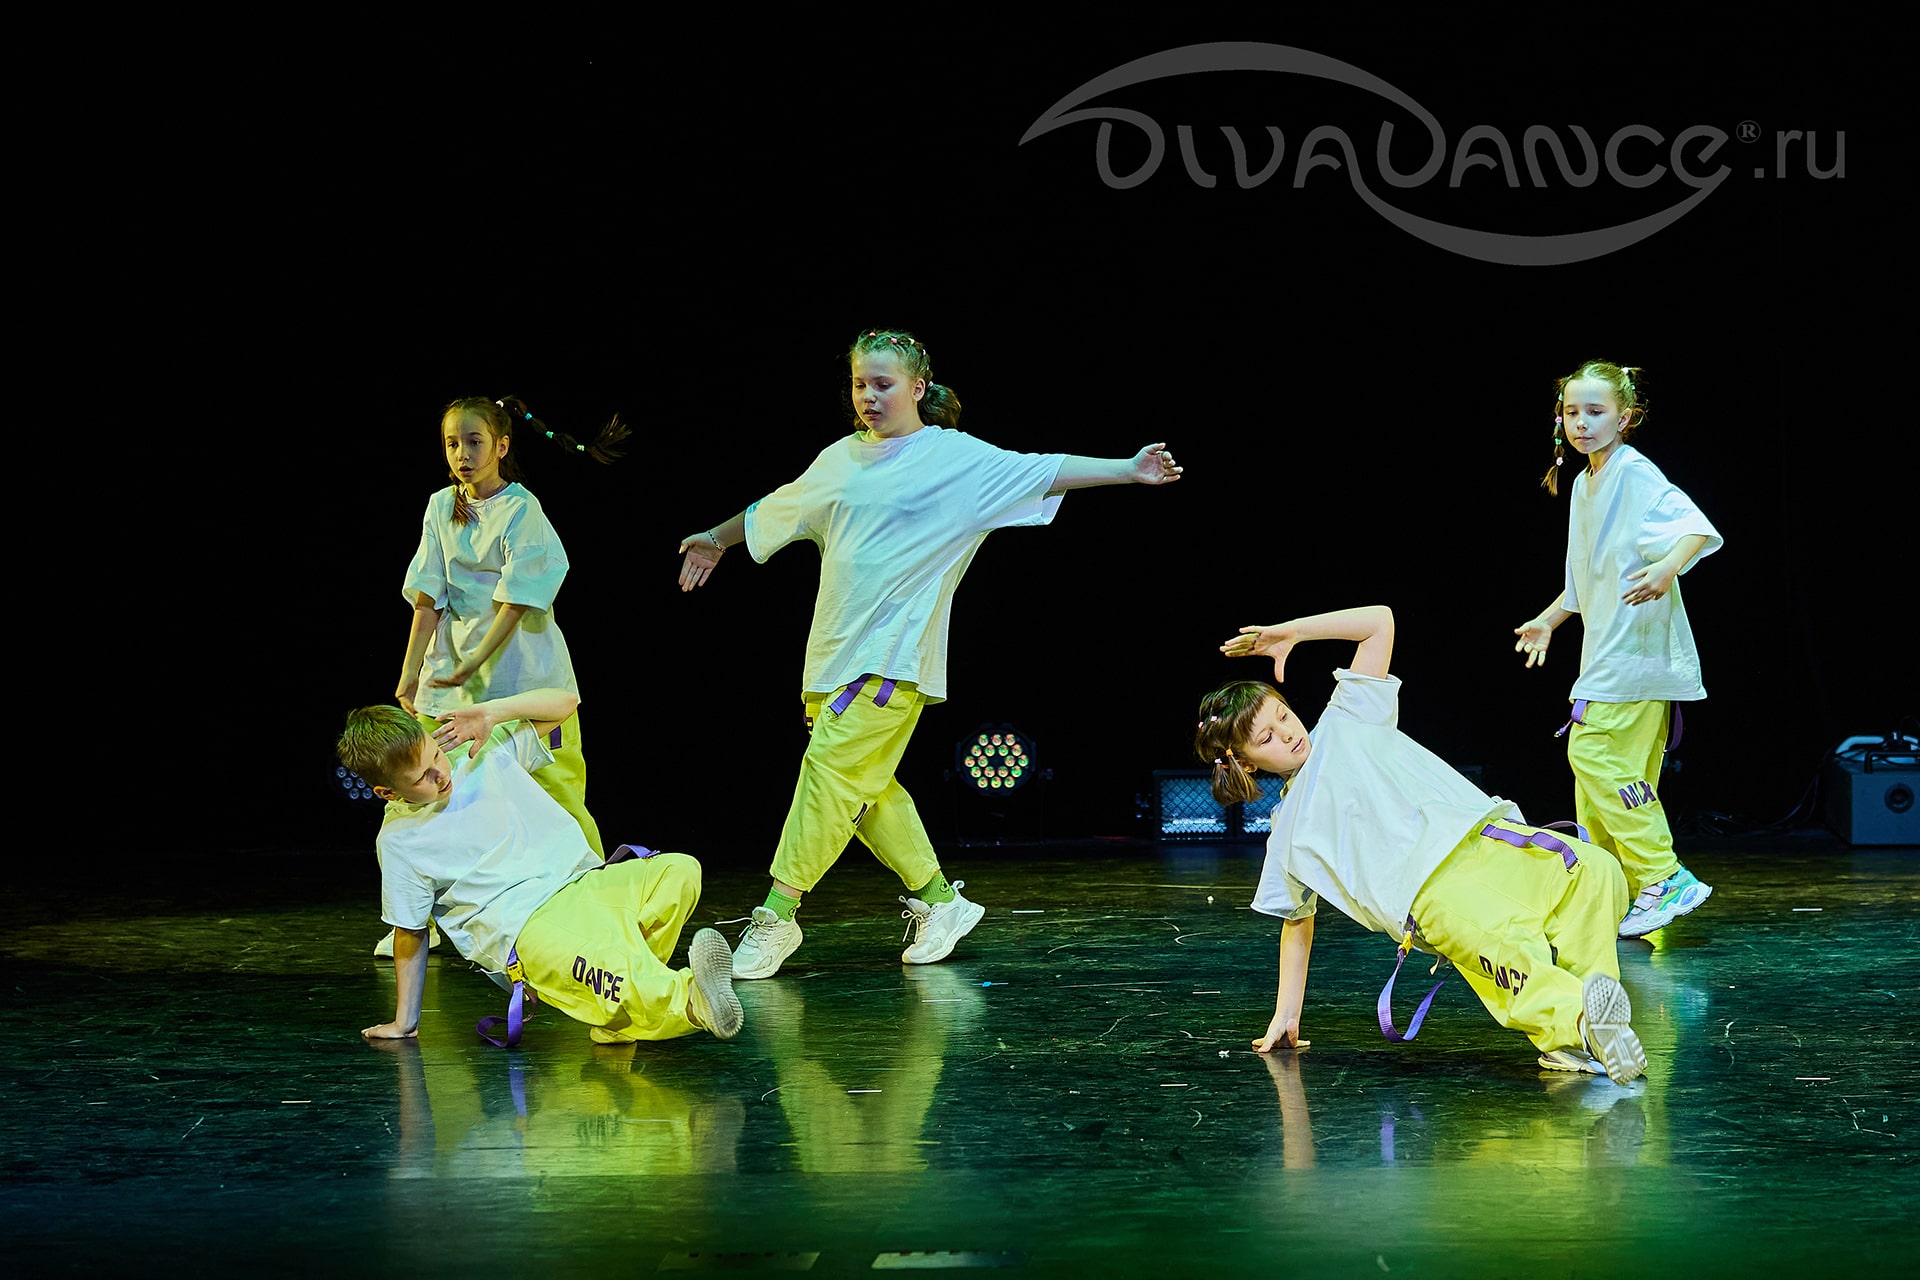 Фотогалерея - Детский хип-хоп - с наших концертов и других выступлений фото  от школы танца Divadance СПб